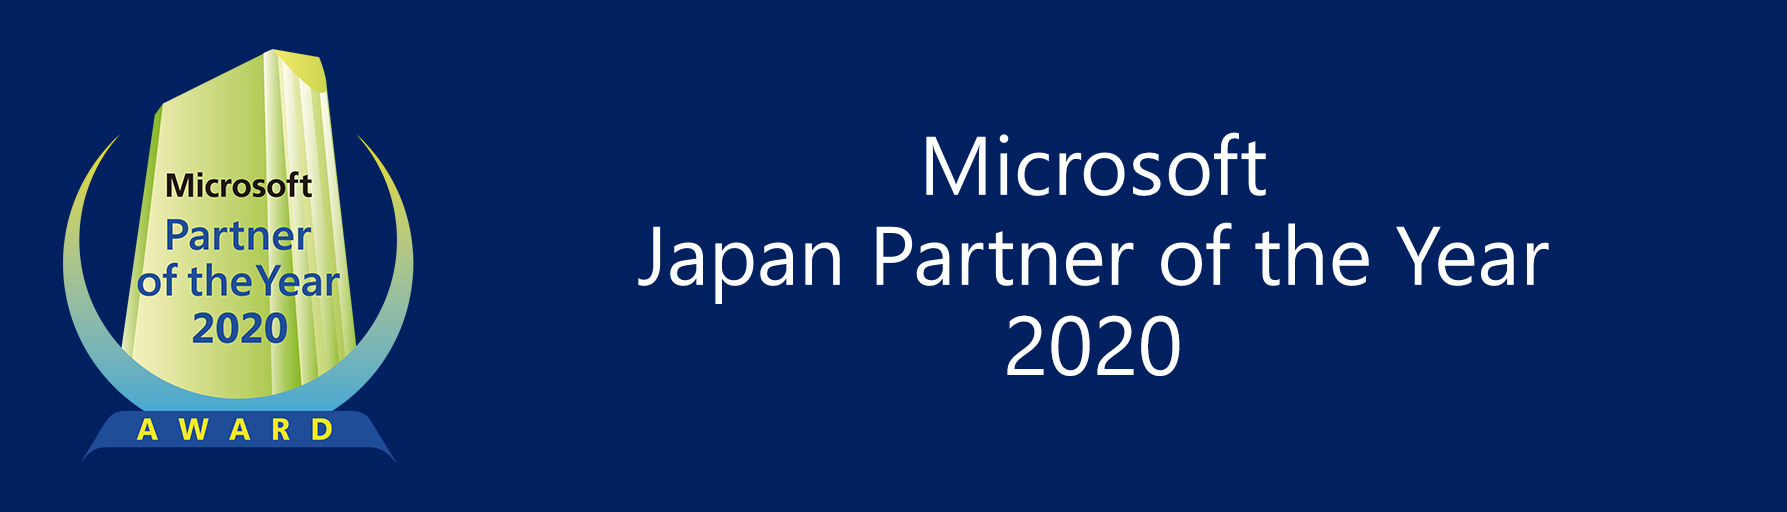 「マイクロソフト ジャパン パートナー オブ ザ イヤー 2020」Application & Data Modernization アワードを受賞